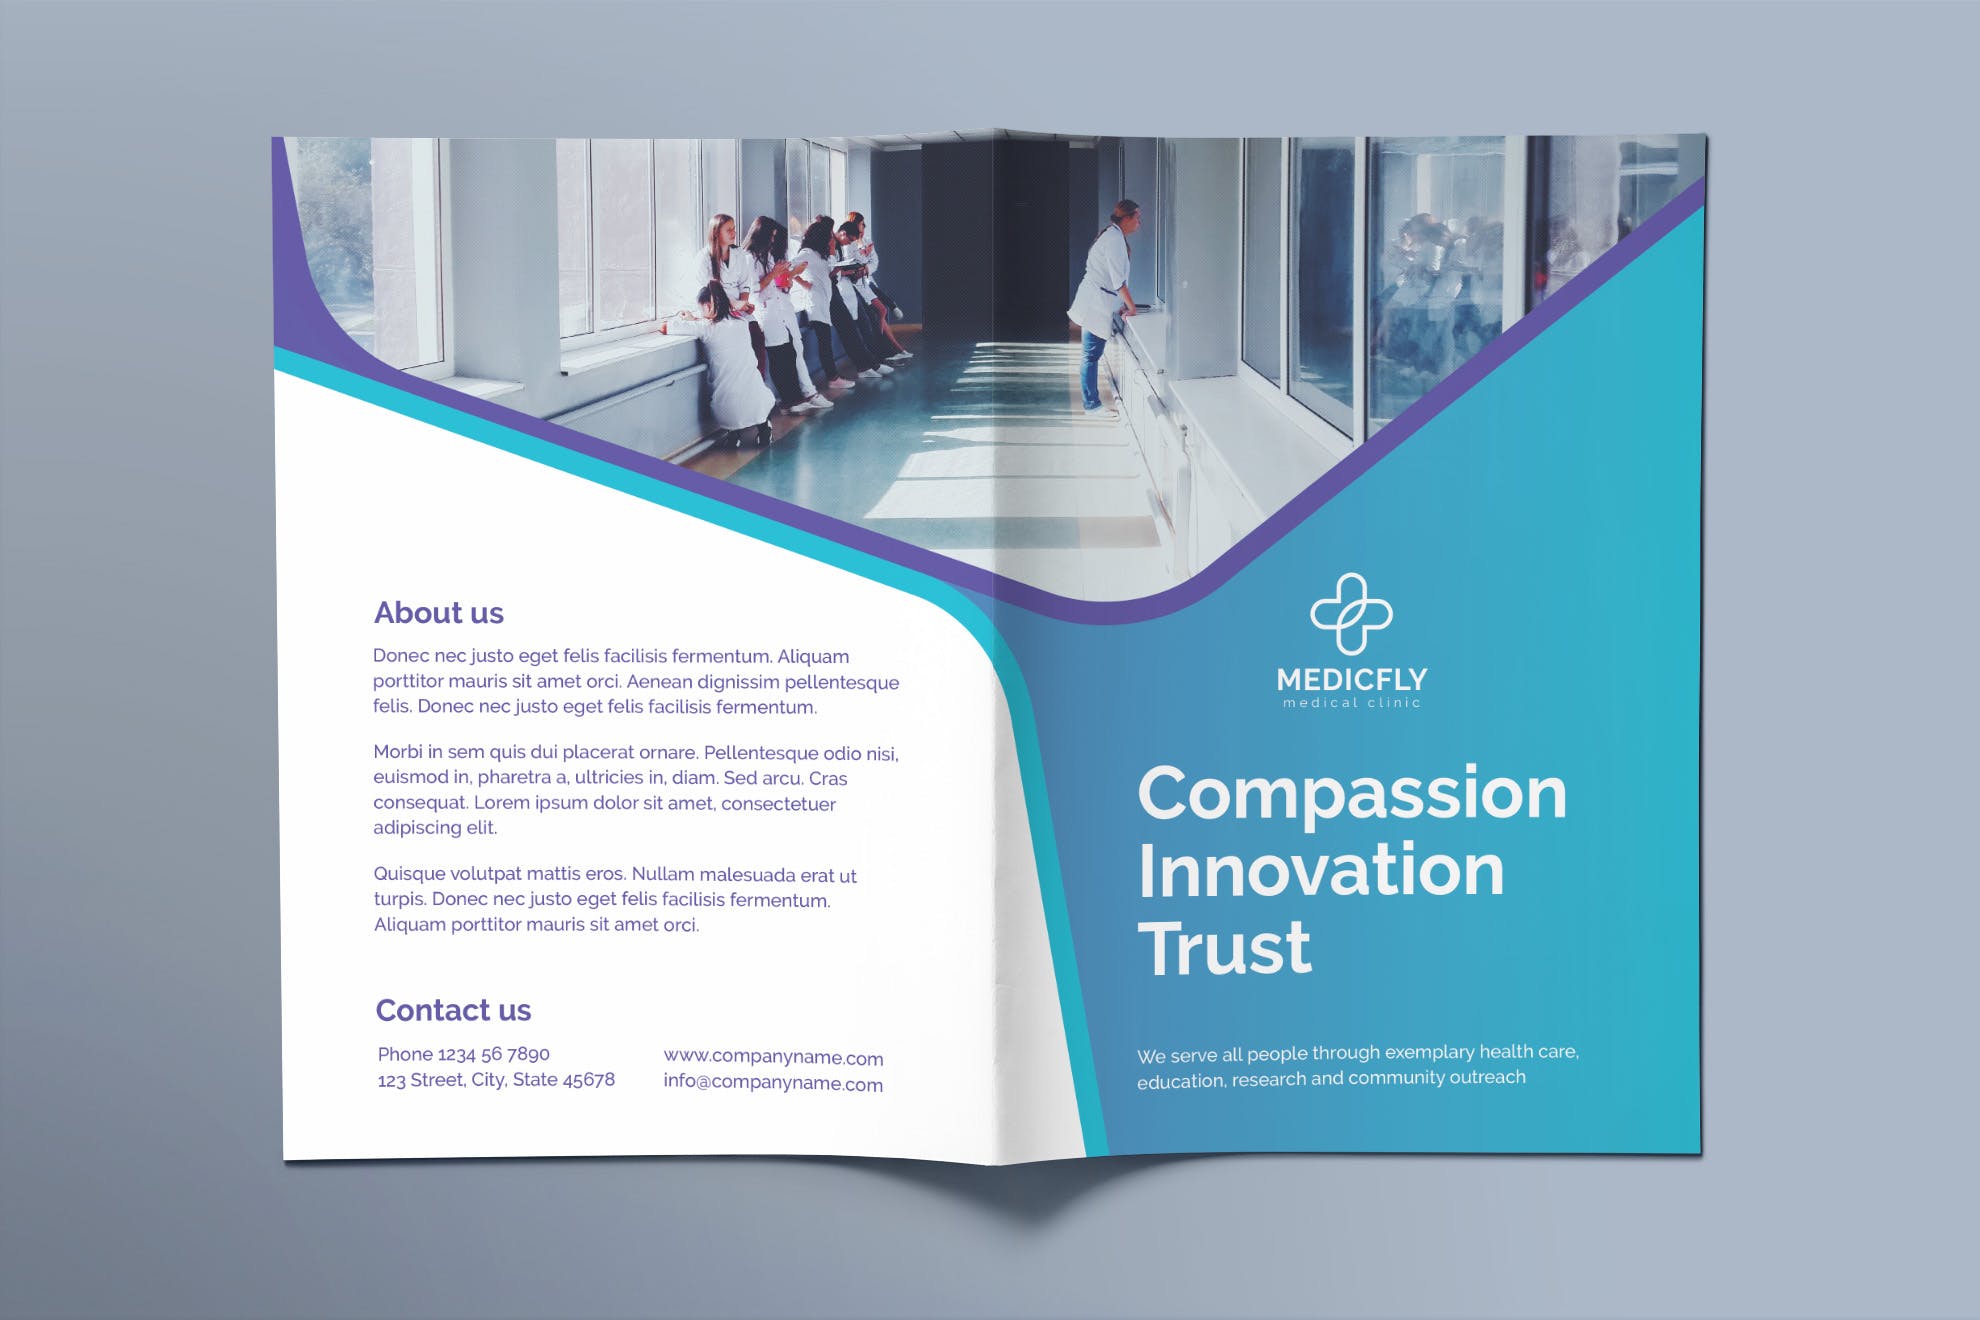 私人诊所/医院对折宣传单设计模板 Medical Clinic Brochure Bifold插图(1)